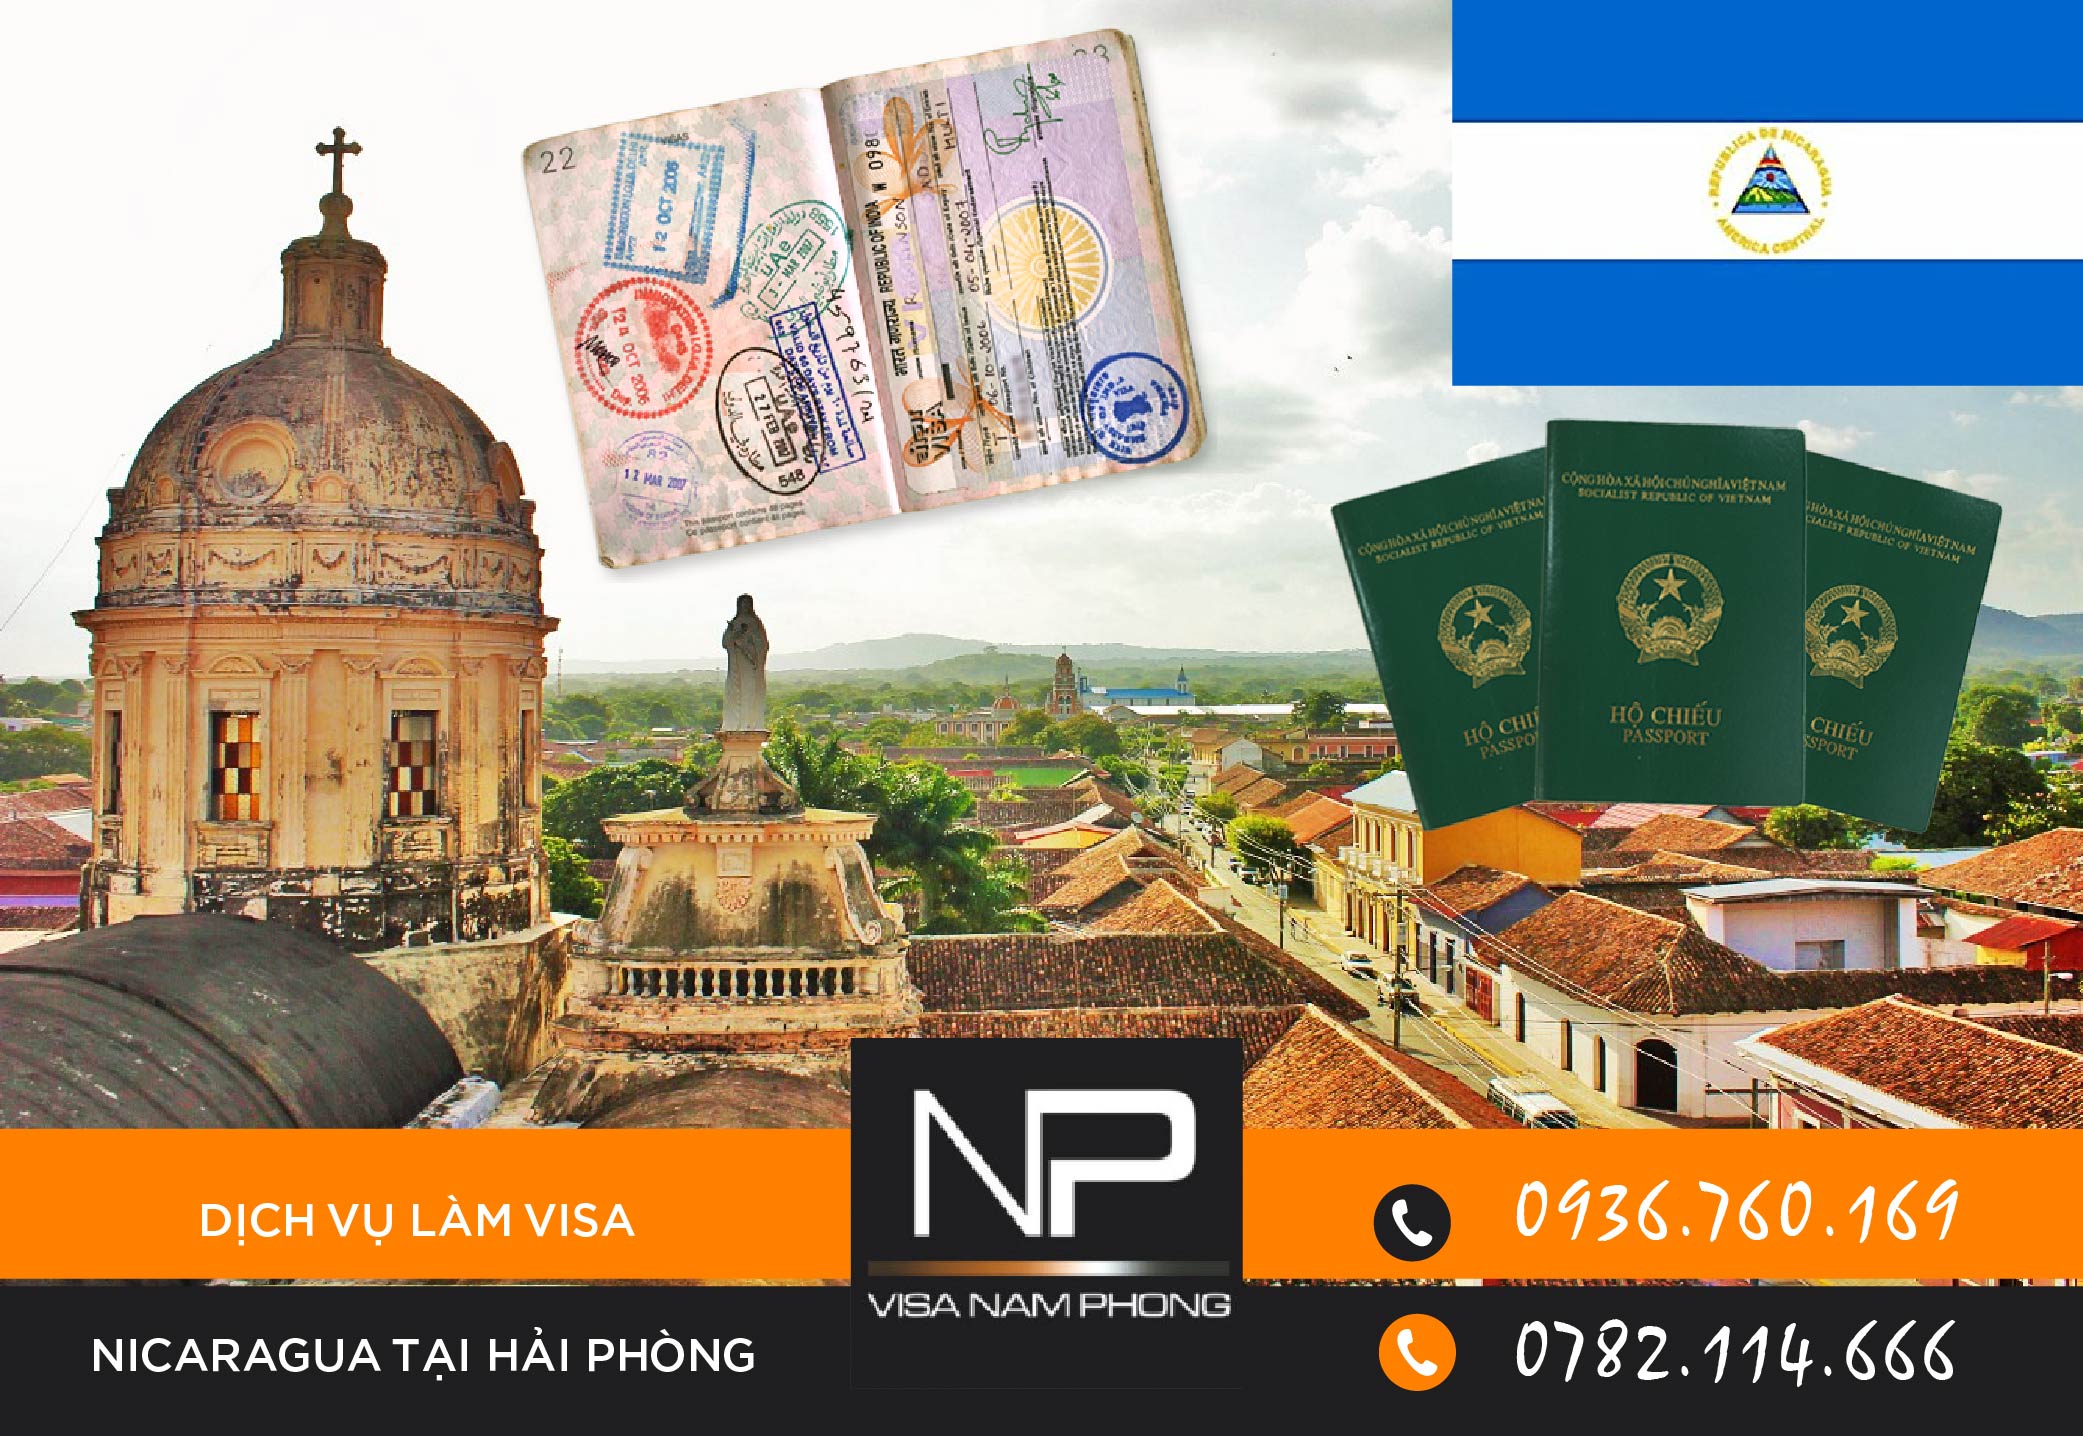 Dịch vụ làm visa Nicaragua tại Hải Phòng